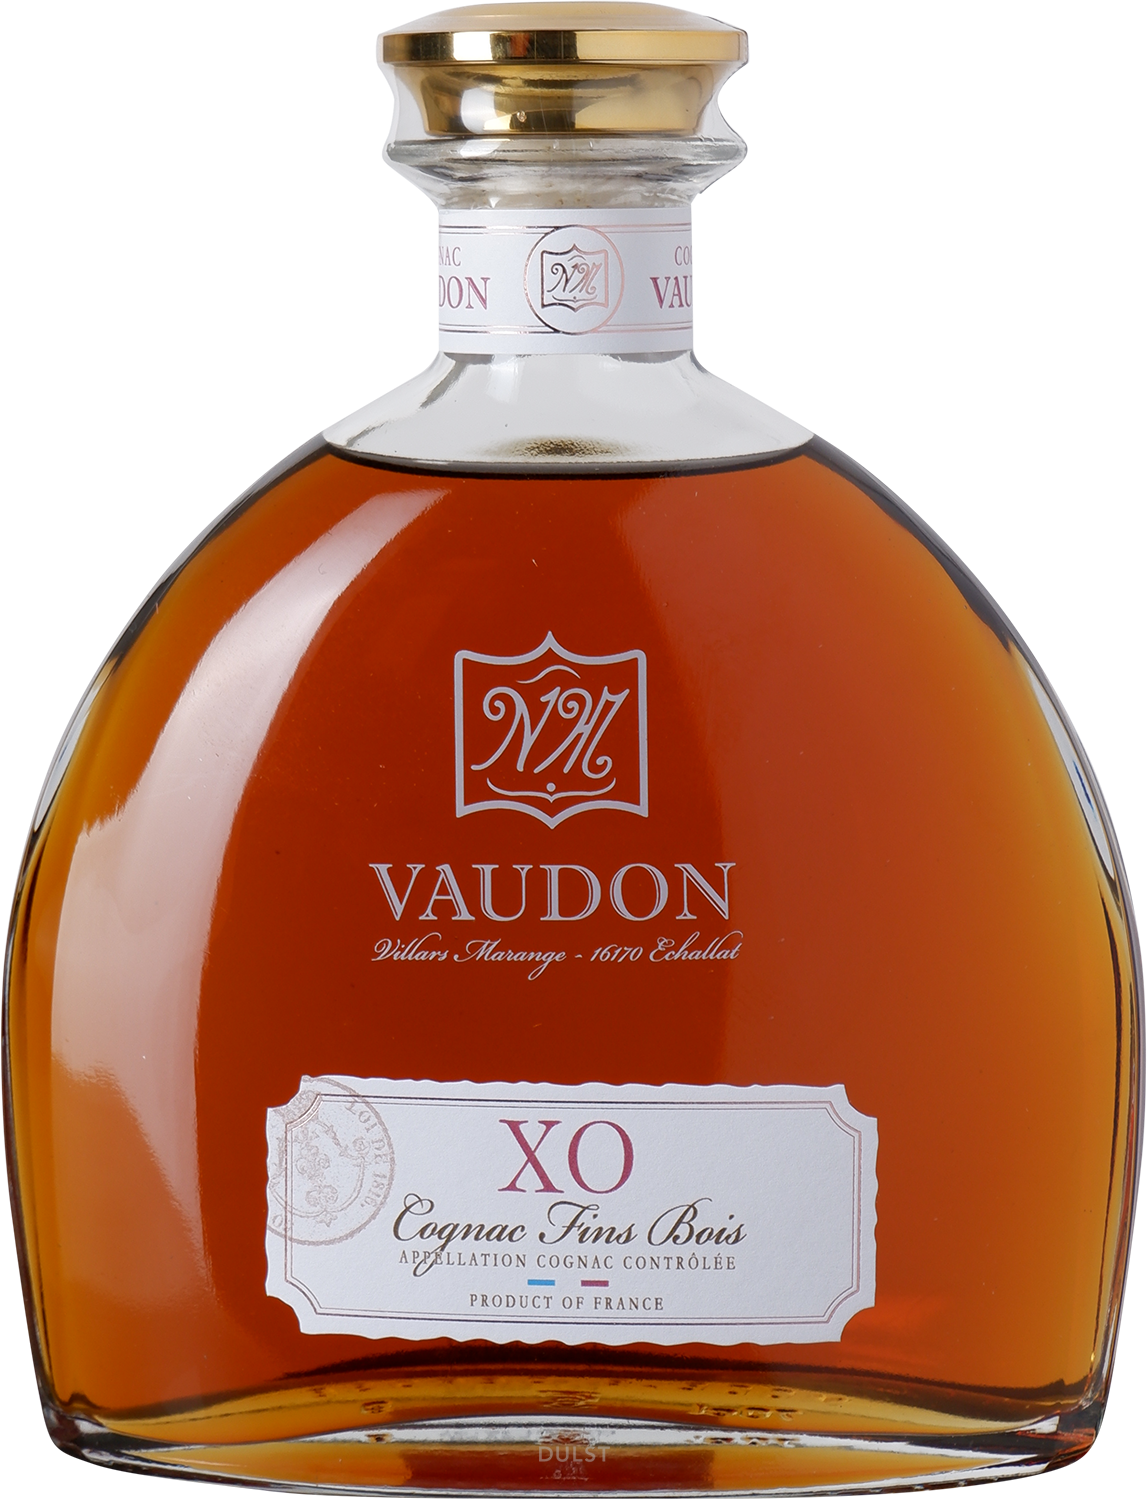 Cognac Vaudon - X.O. 20 y Old Cognac Fins Bois Carafe with giftbox